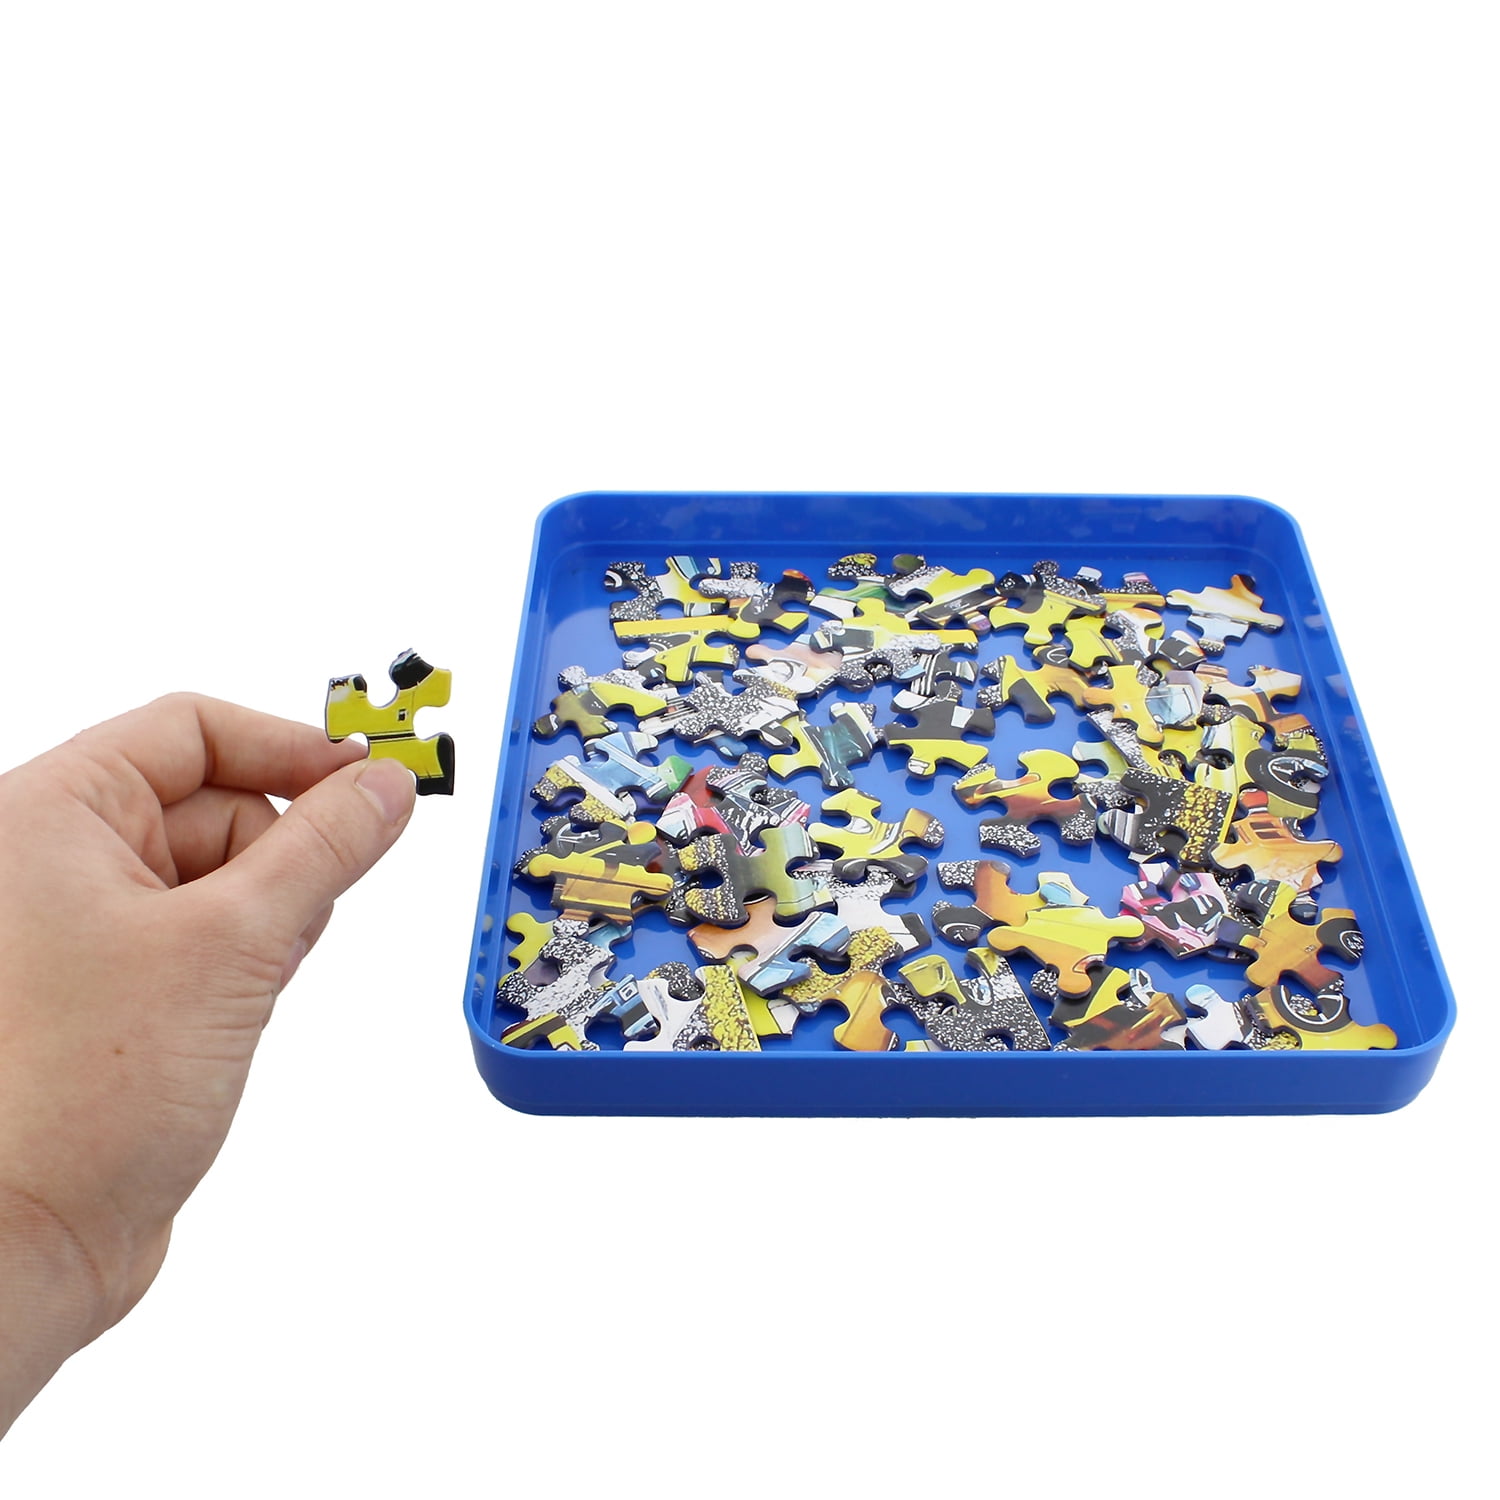 Jigitz Jigsaw Puzzle Sorter Trays 7.9 x 7.9 - 6PK Plastic Puzzle Organizer  Trays in Blue 